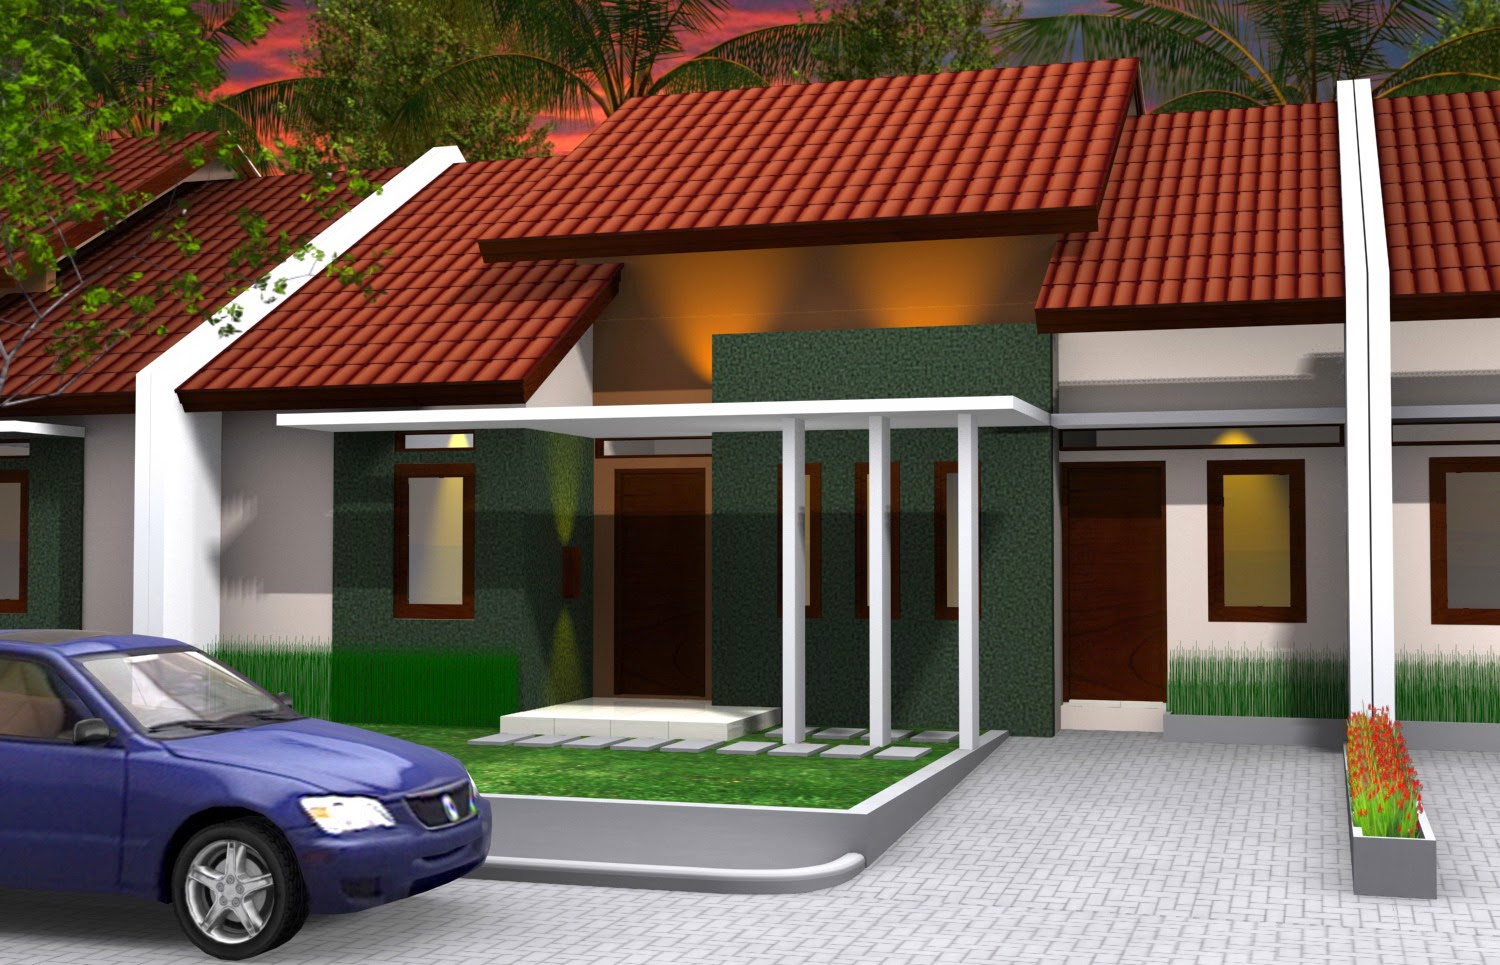 Desain Rumah Minimalis Type 70 1 lantai Terbaru 2015 ~ Pagar Rumah